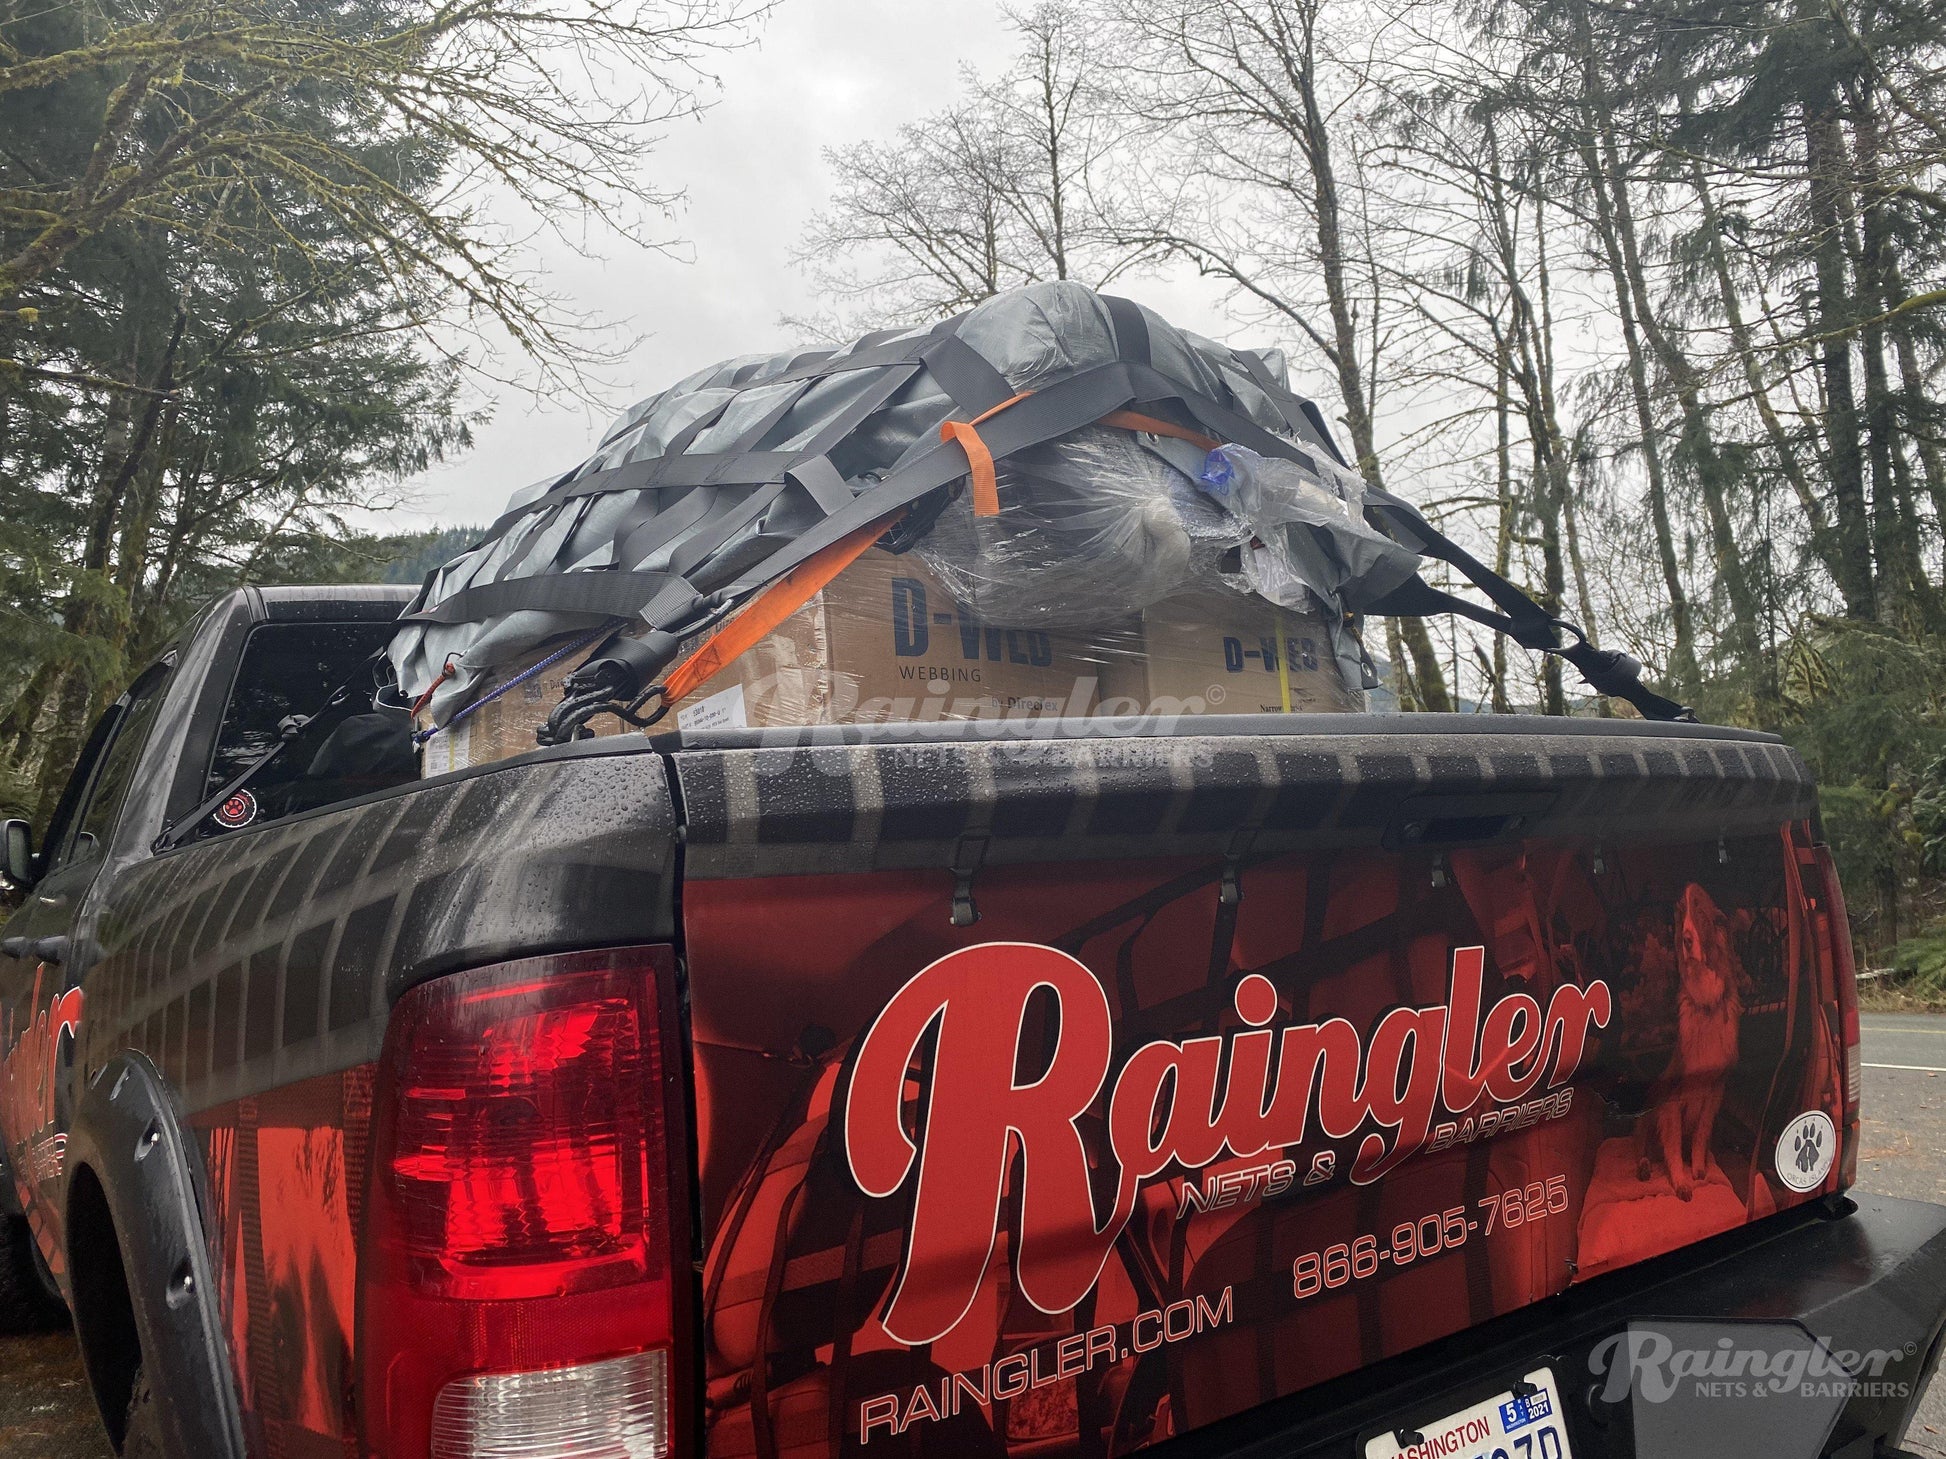 RAM Truck 6'4" Bed Net-Raingler